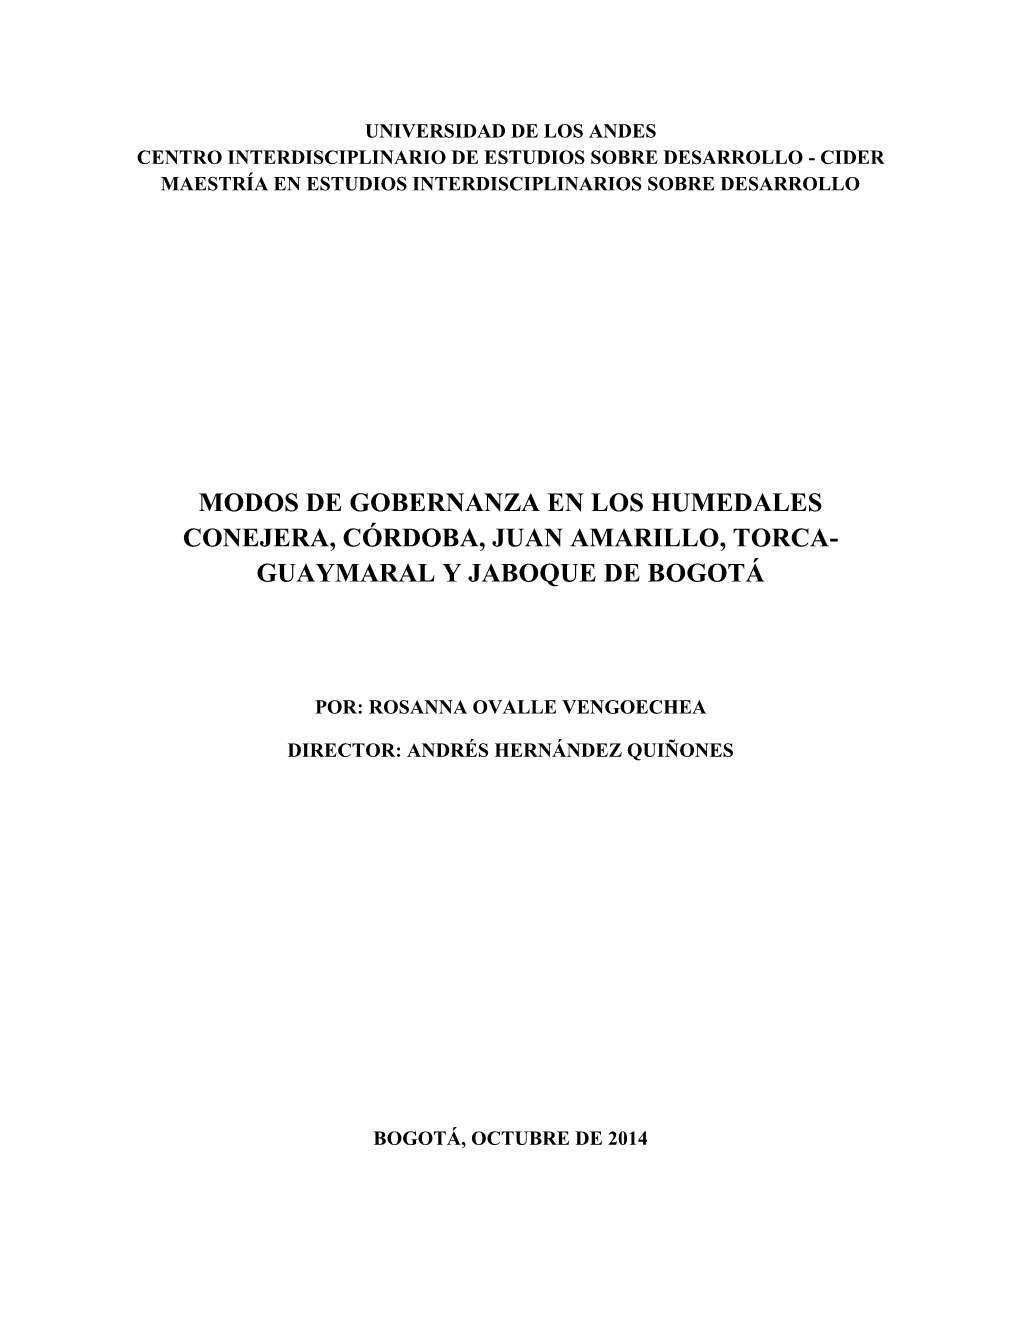 Modos De Gobernanza En Los Humedales Conejera, Córdoba, Juan Amarillo, Torca- Guaymaral Y Jaboque De Bogotá